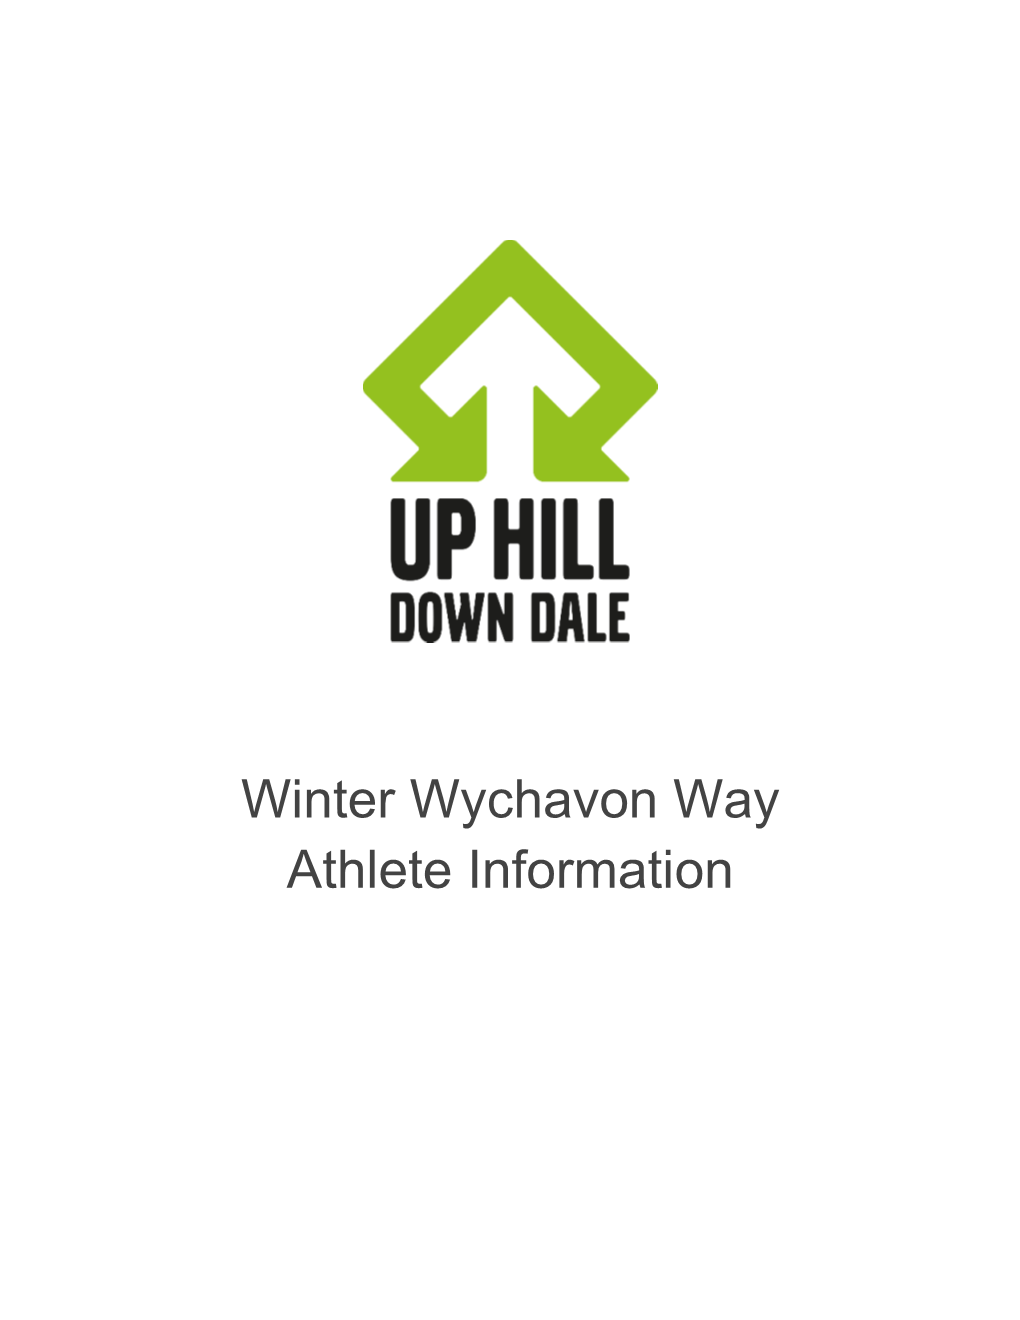 Winter Wychavon Way Athlete Information